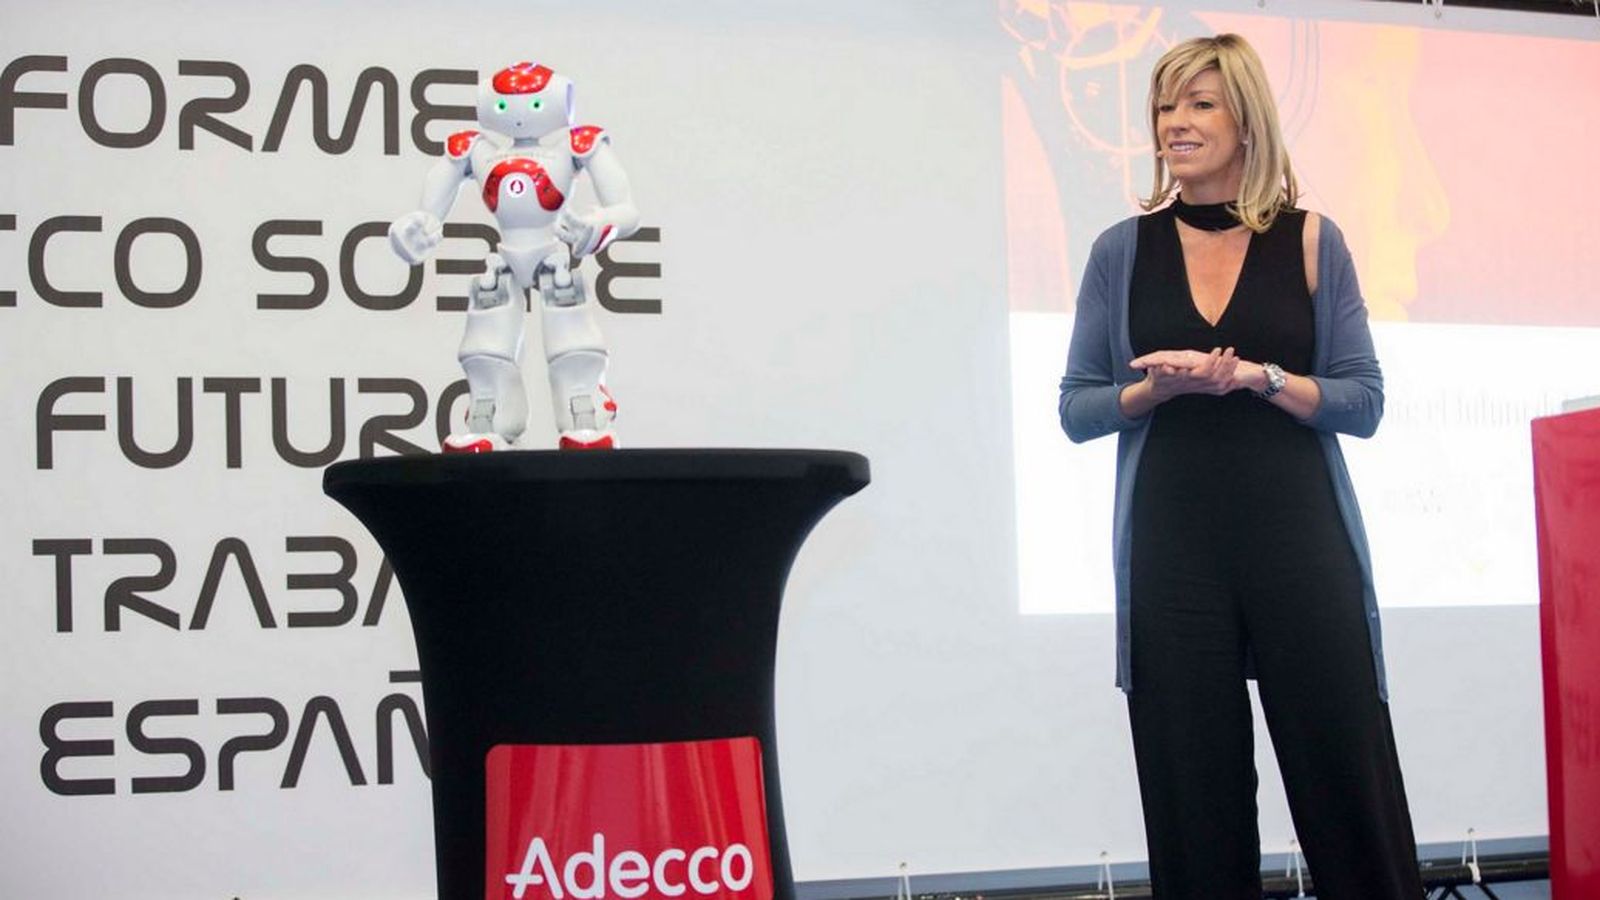 Foto: Margarita Álvarez, directora de marketing y comunicación de Adecco, en la presentación del informe sobre el futuro del trabajo en España. (Adecco)